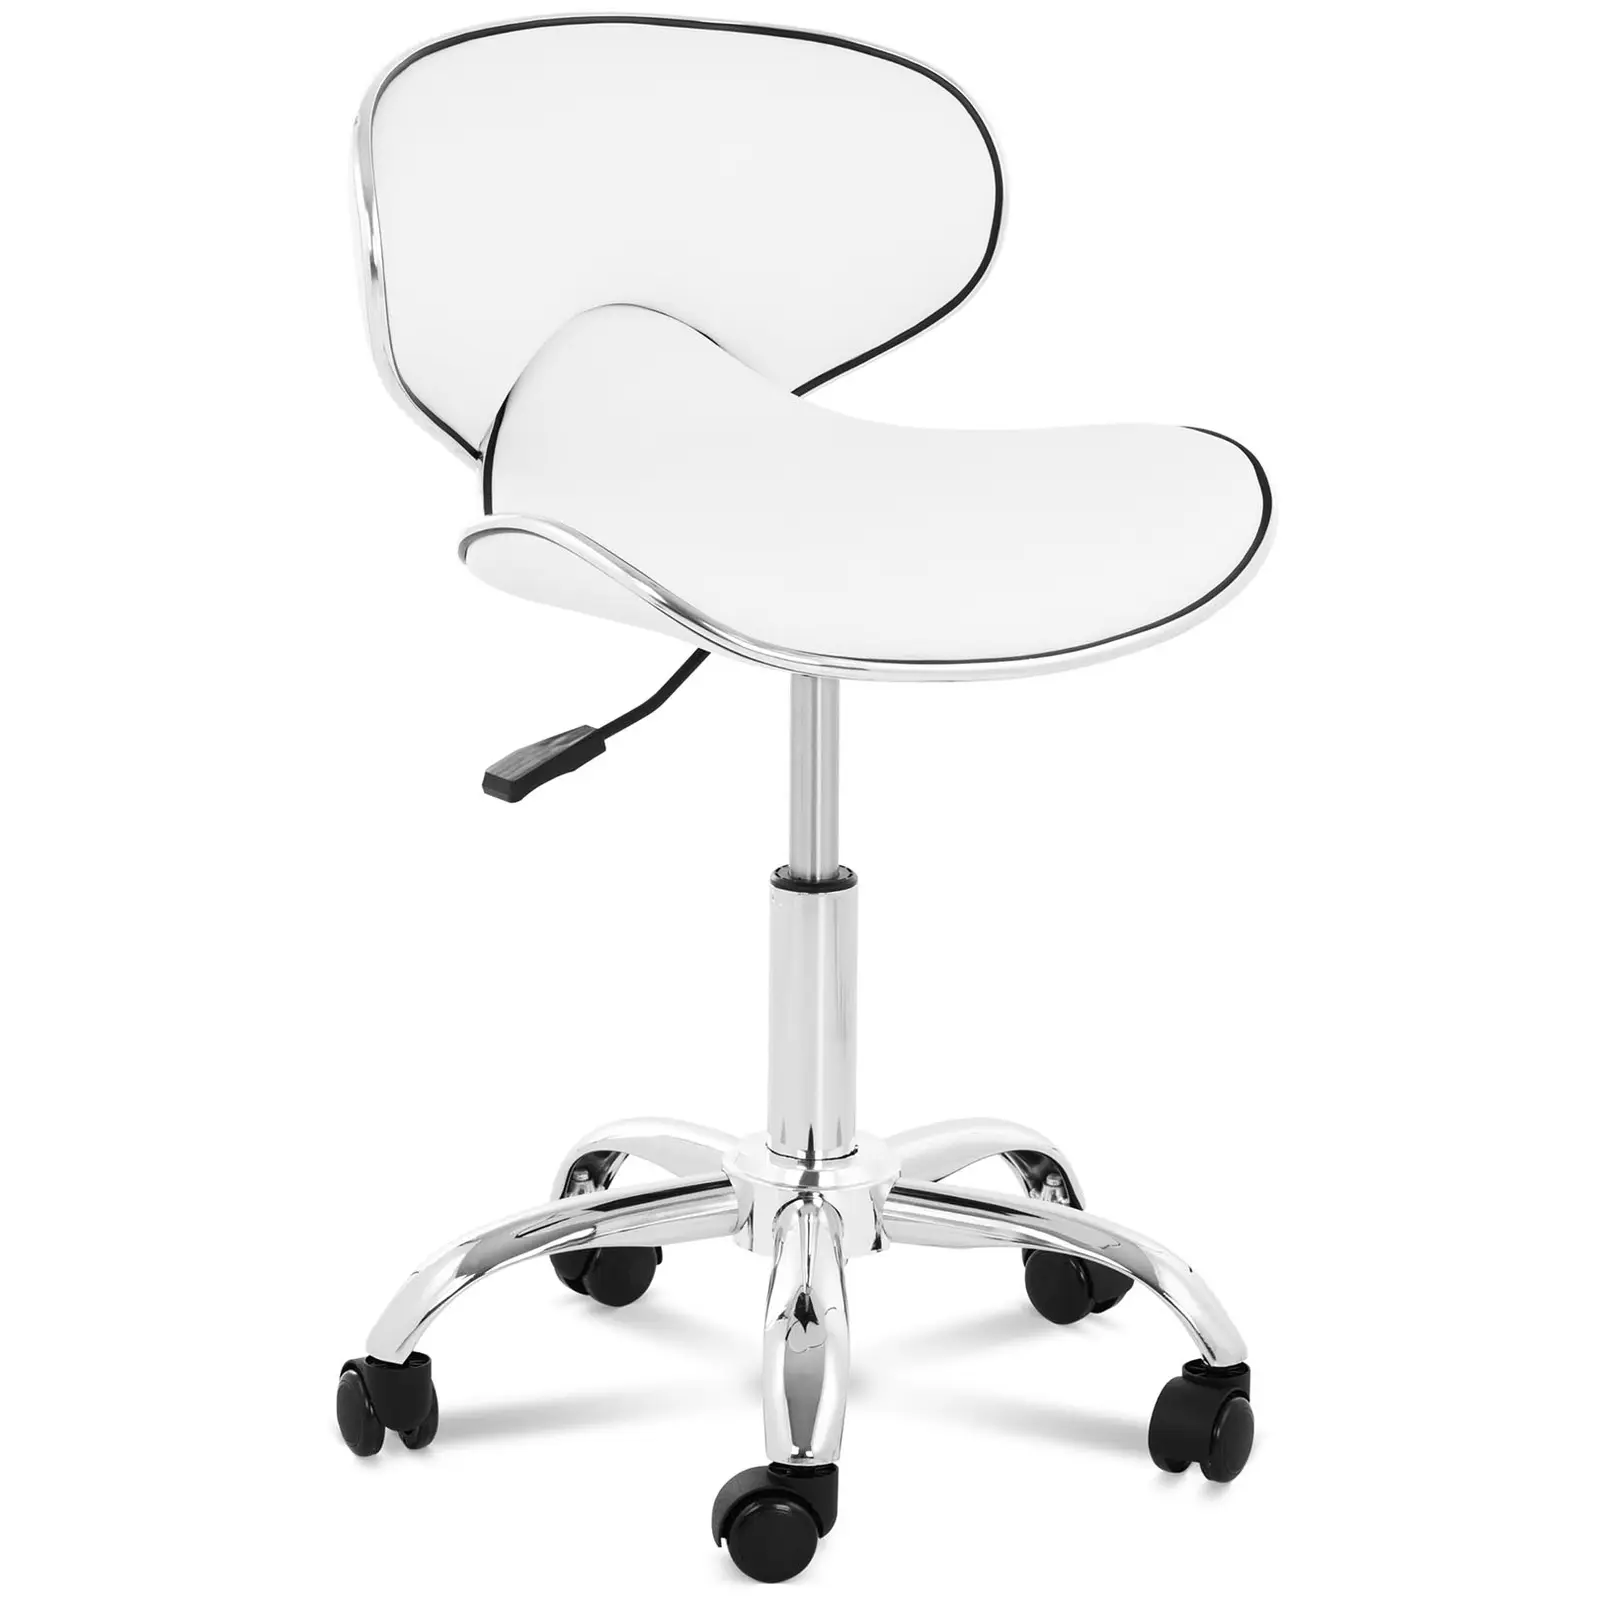 Cadeira para salão de beleza -  mm - 150 kg - Branco